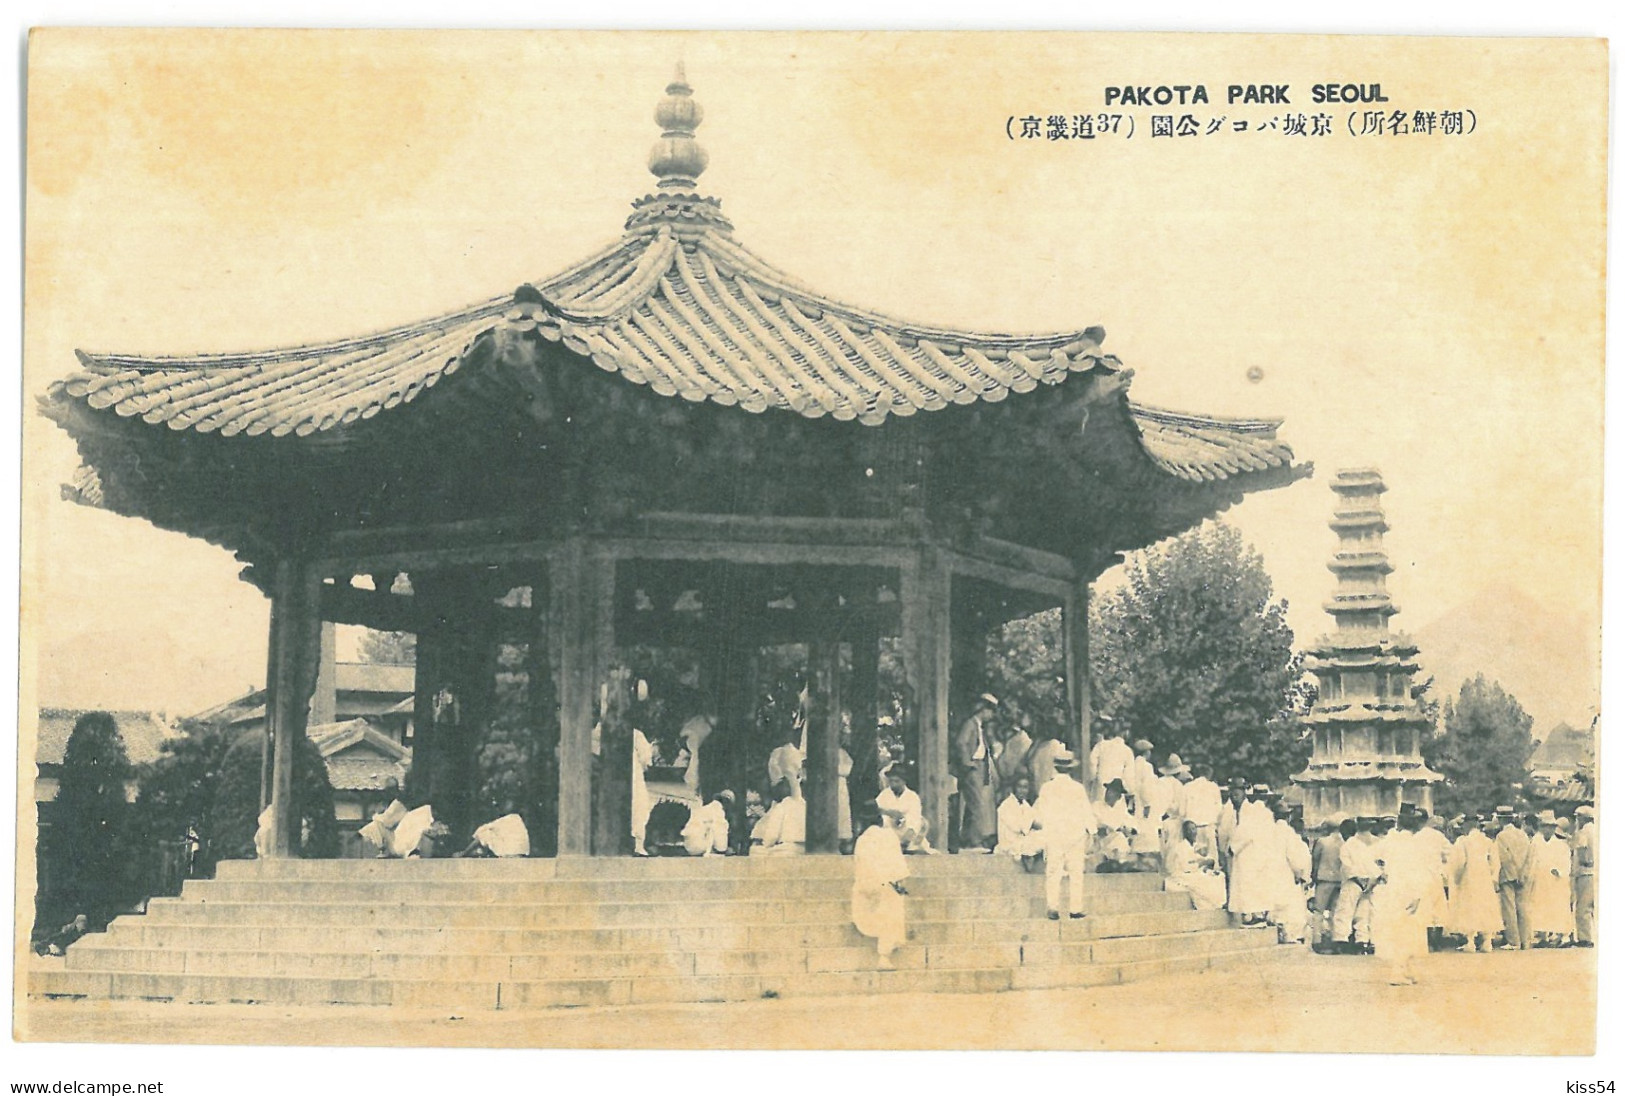 KOR 4 - 17816 SEOUL, Pakota Park, Korea - Old Postcard - Unused - Korea, South